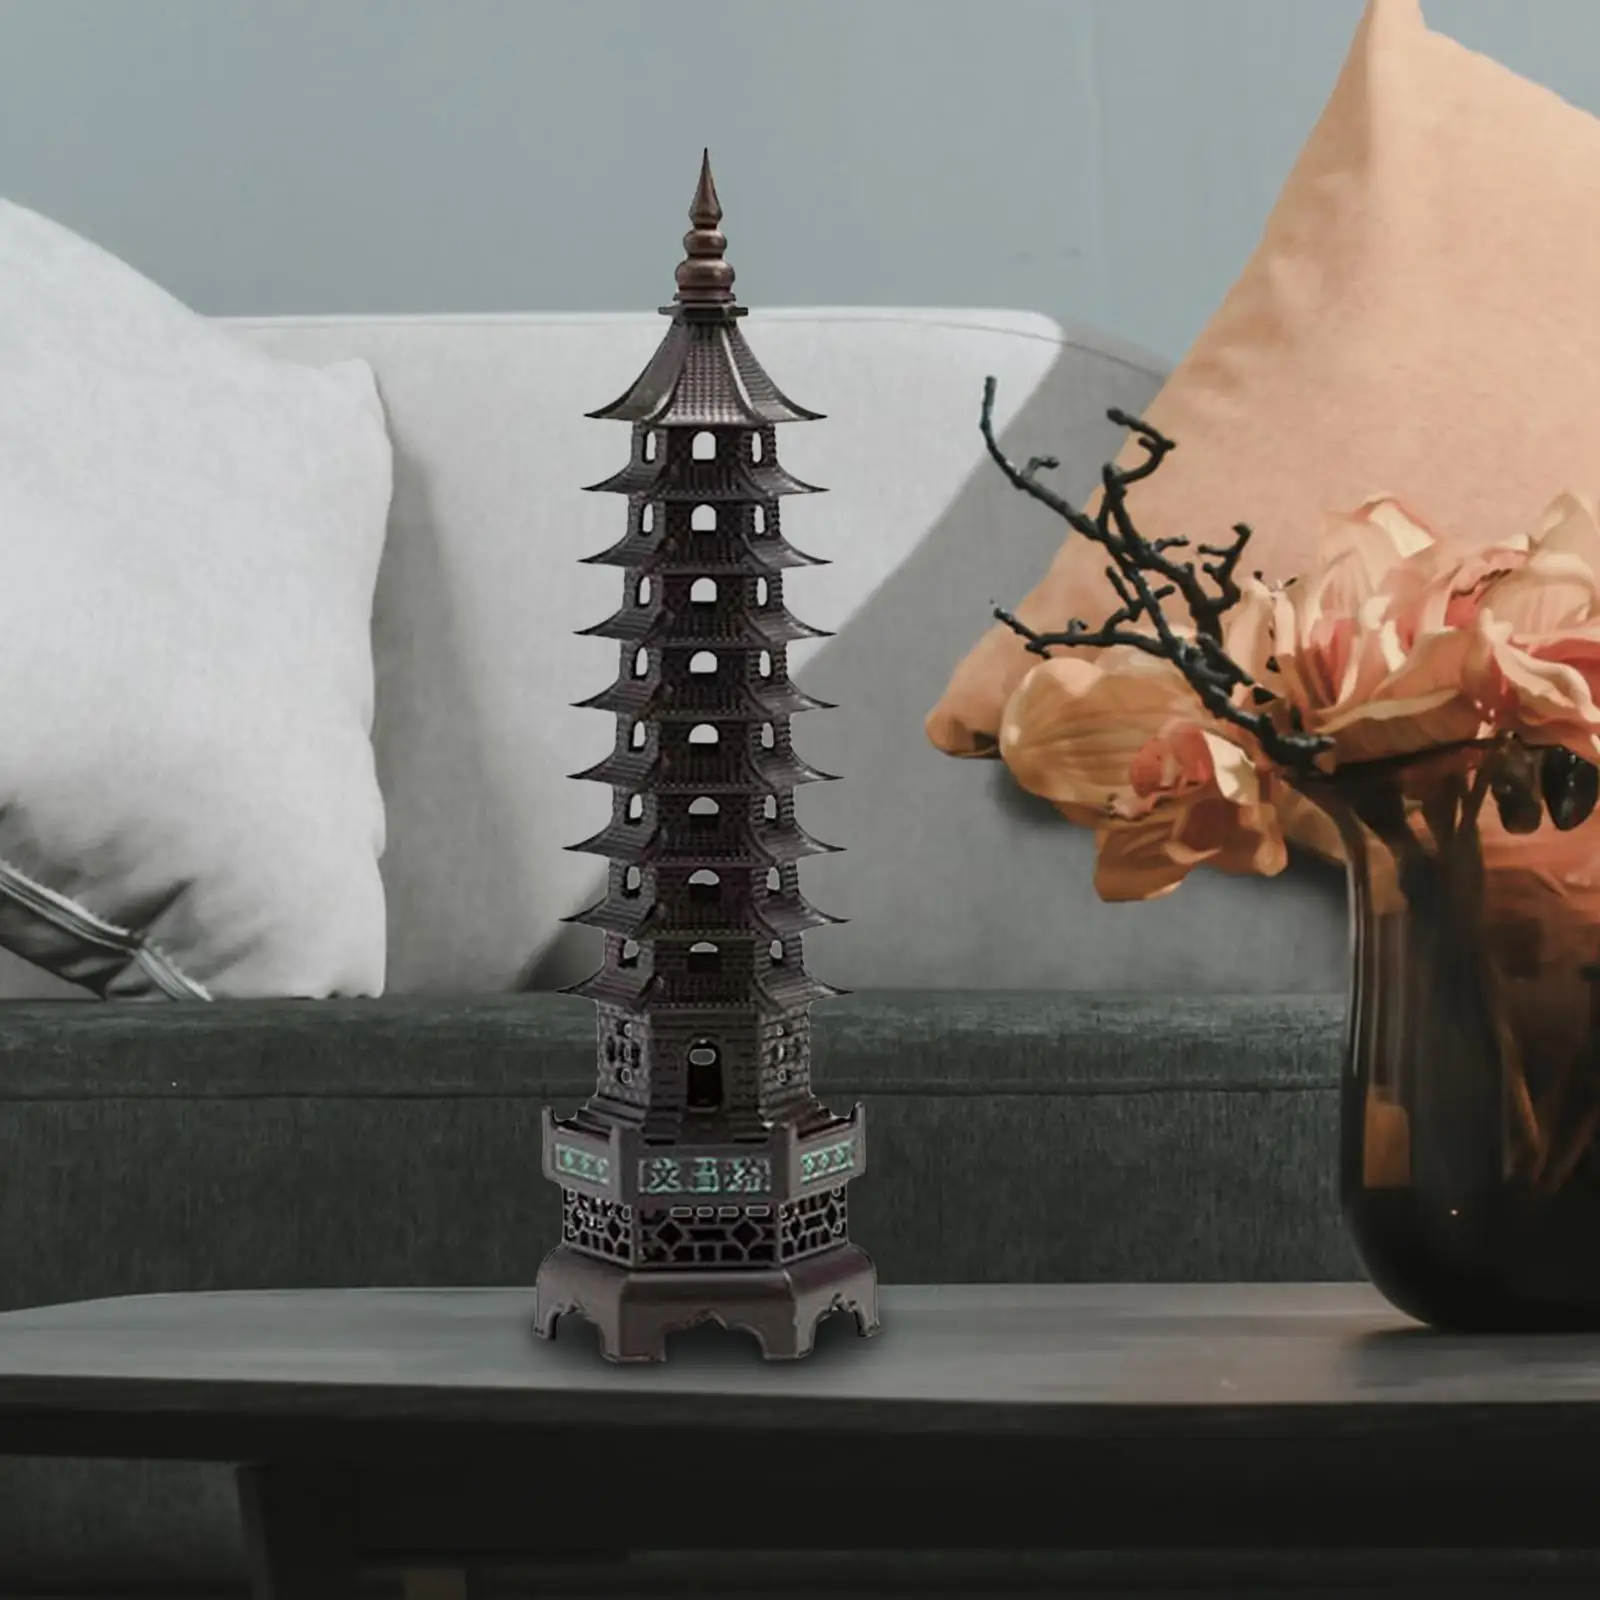 Incense Holder Decorative Decor Craft Tower Incense Burner for Meditation